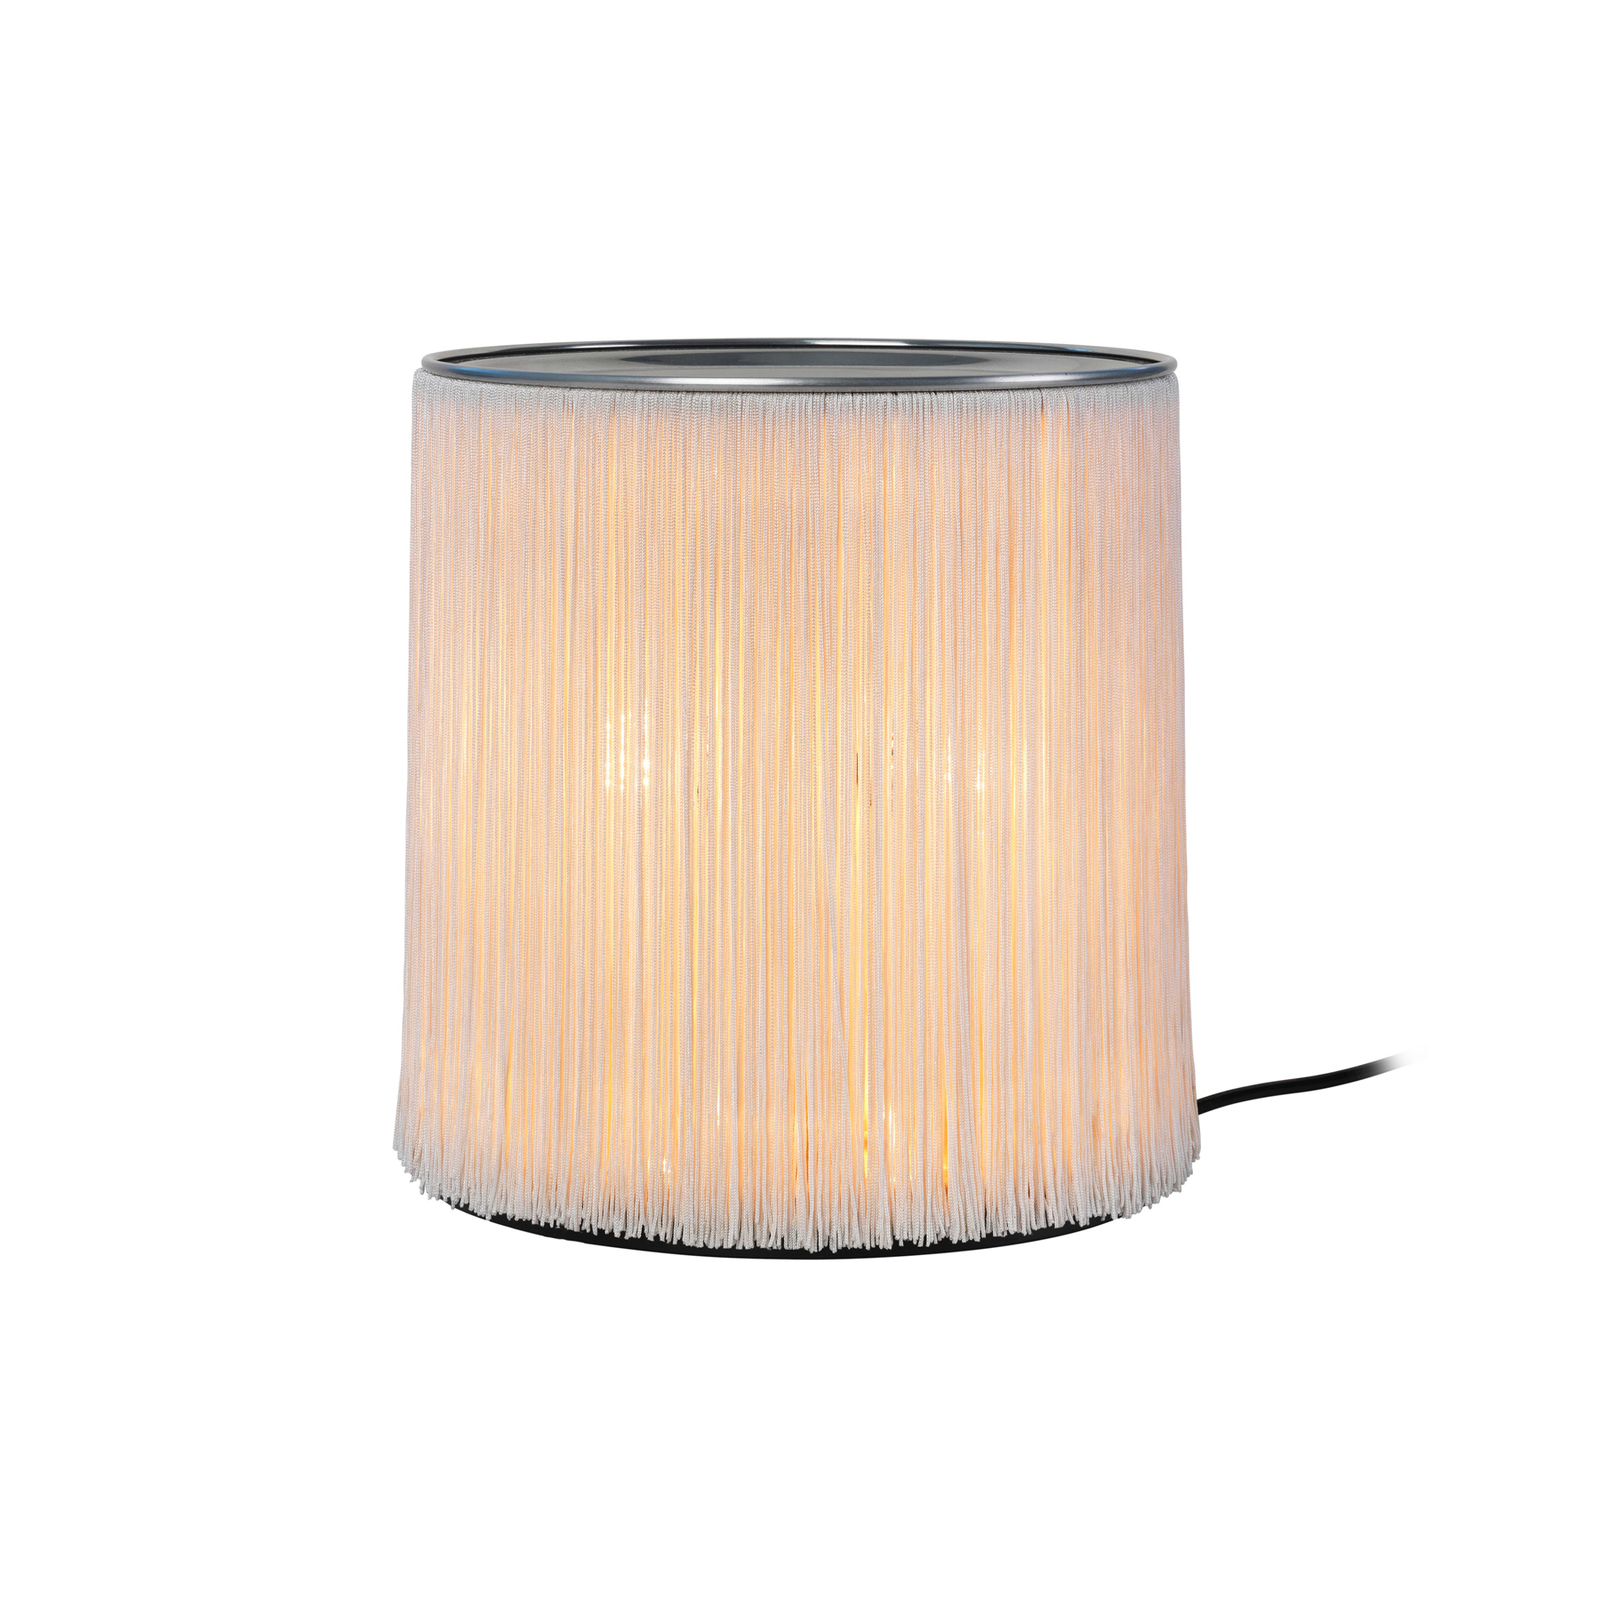 Gubi tafellamp model 597, aluminium, crème, hoogte 29 cm